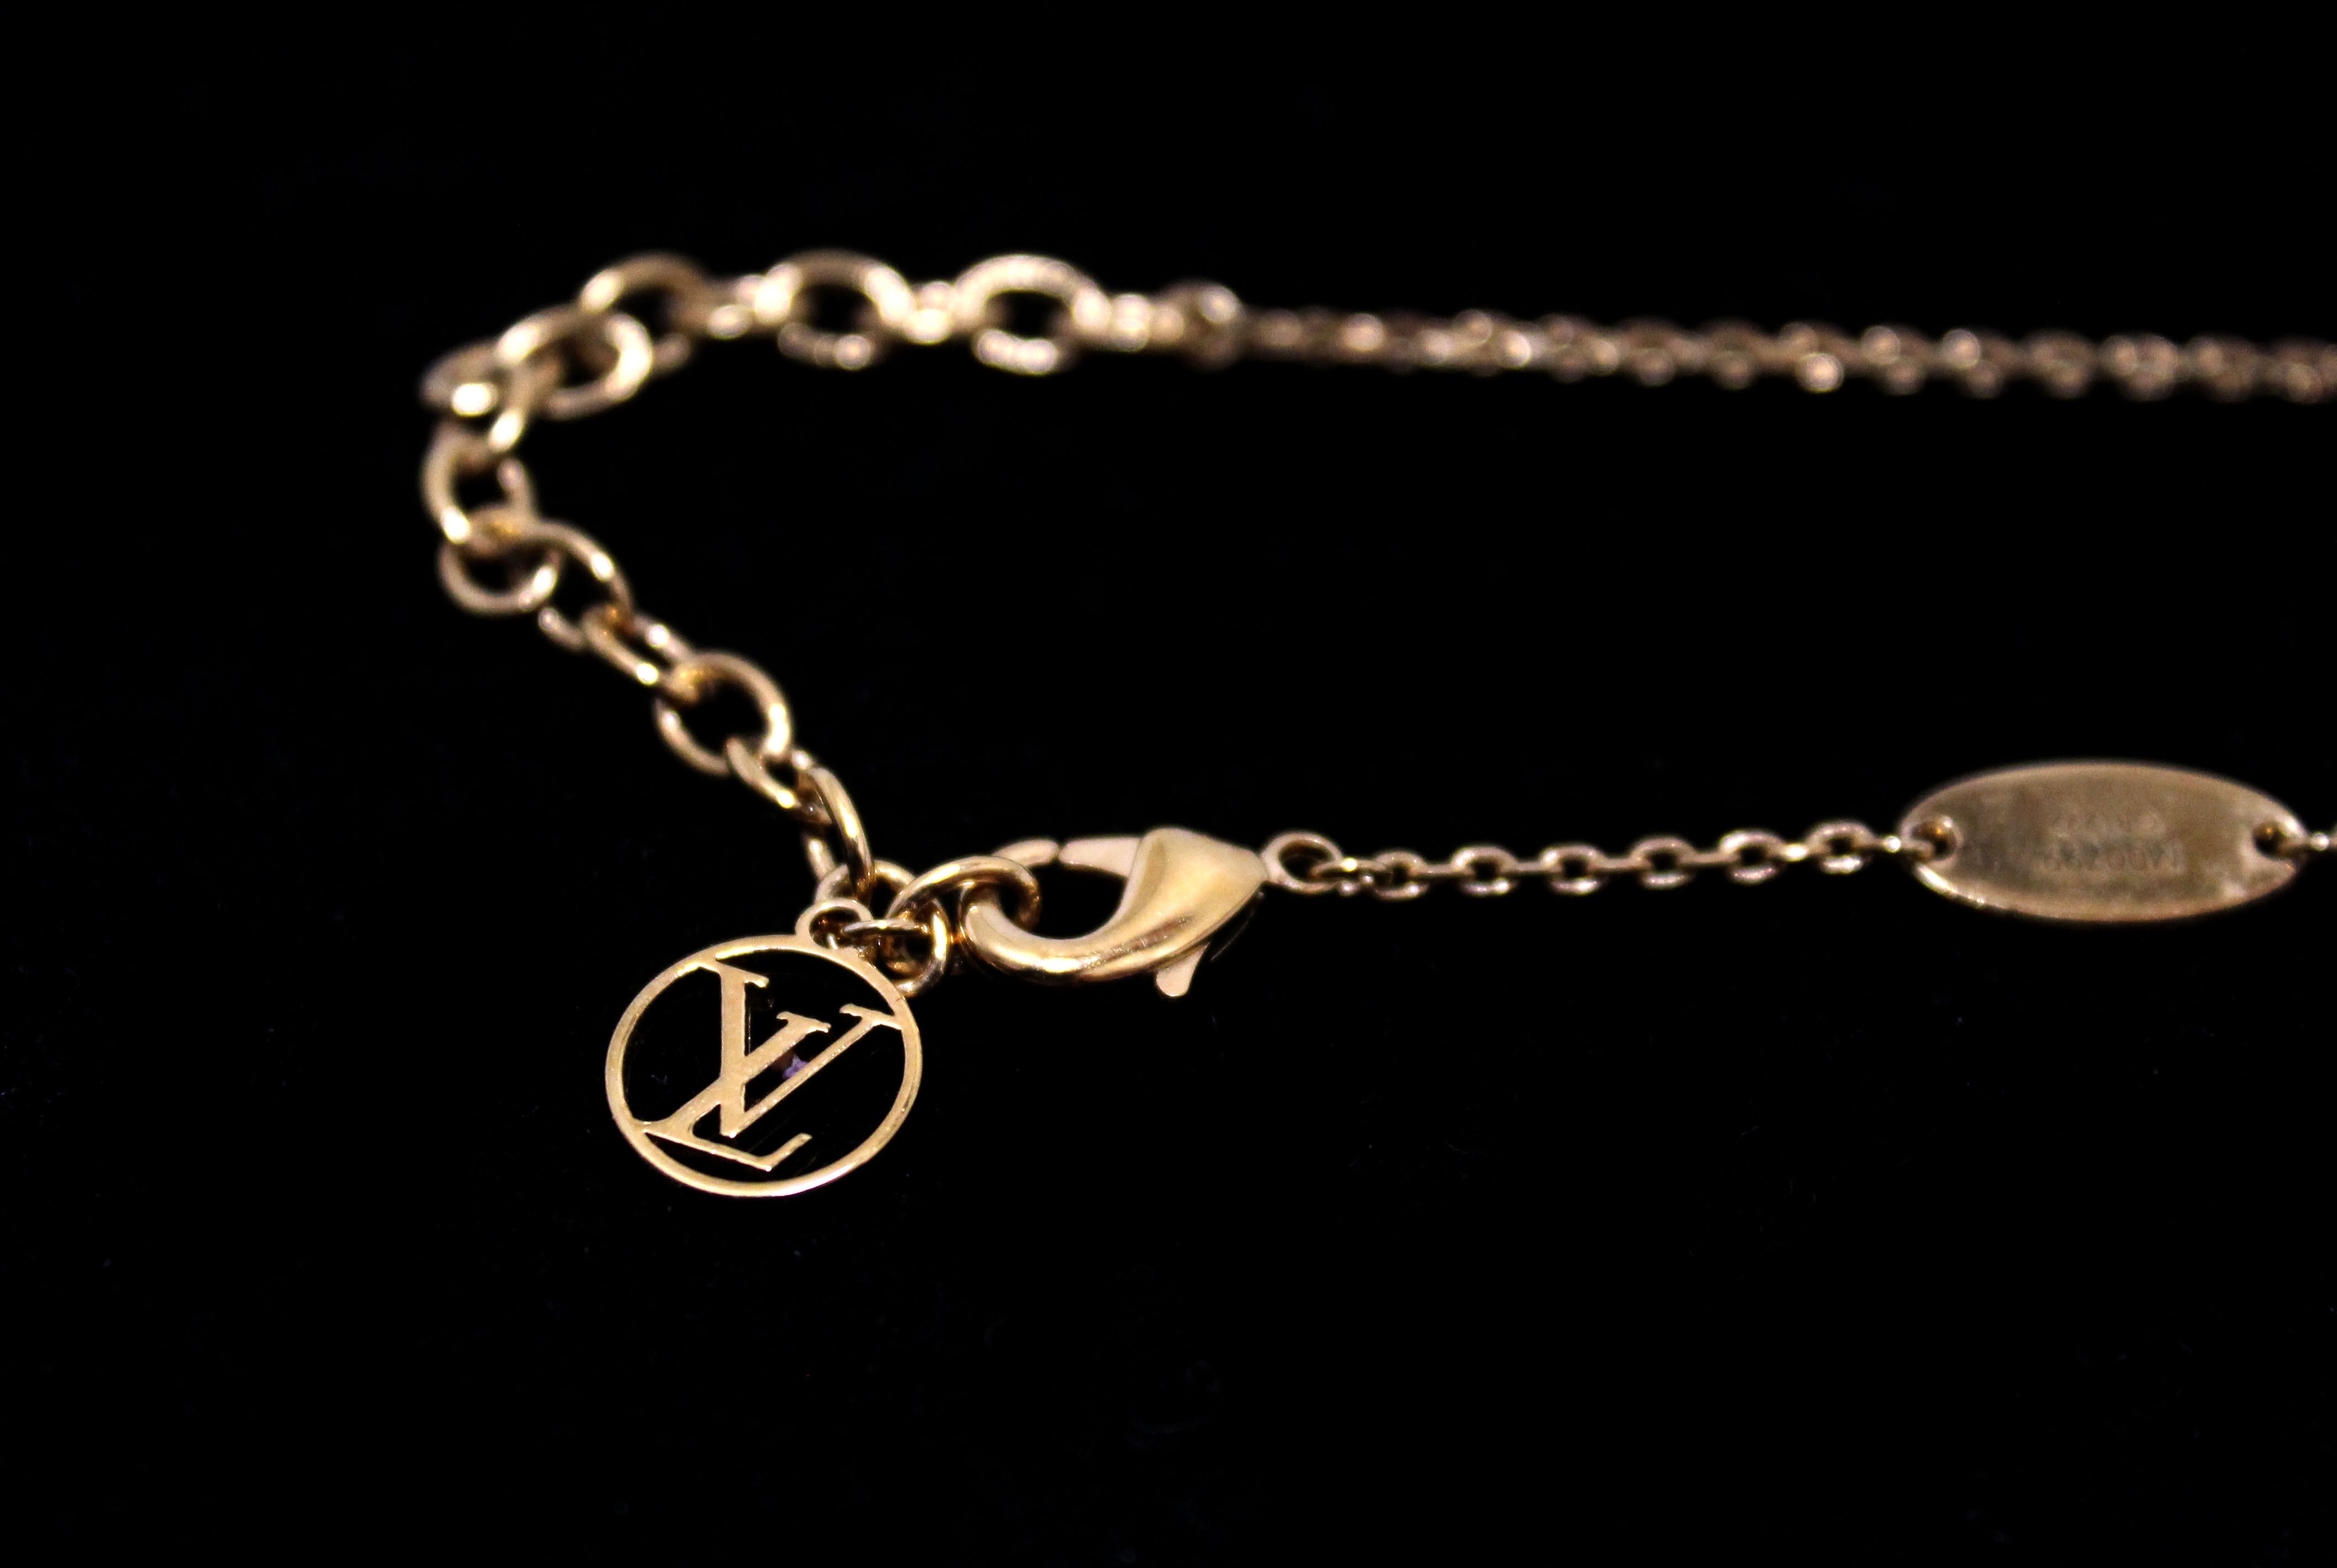 Authentic Louis Vuitton Gold Vivienne Swing Necklace